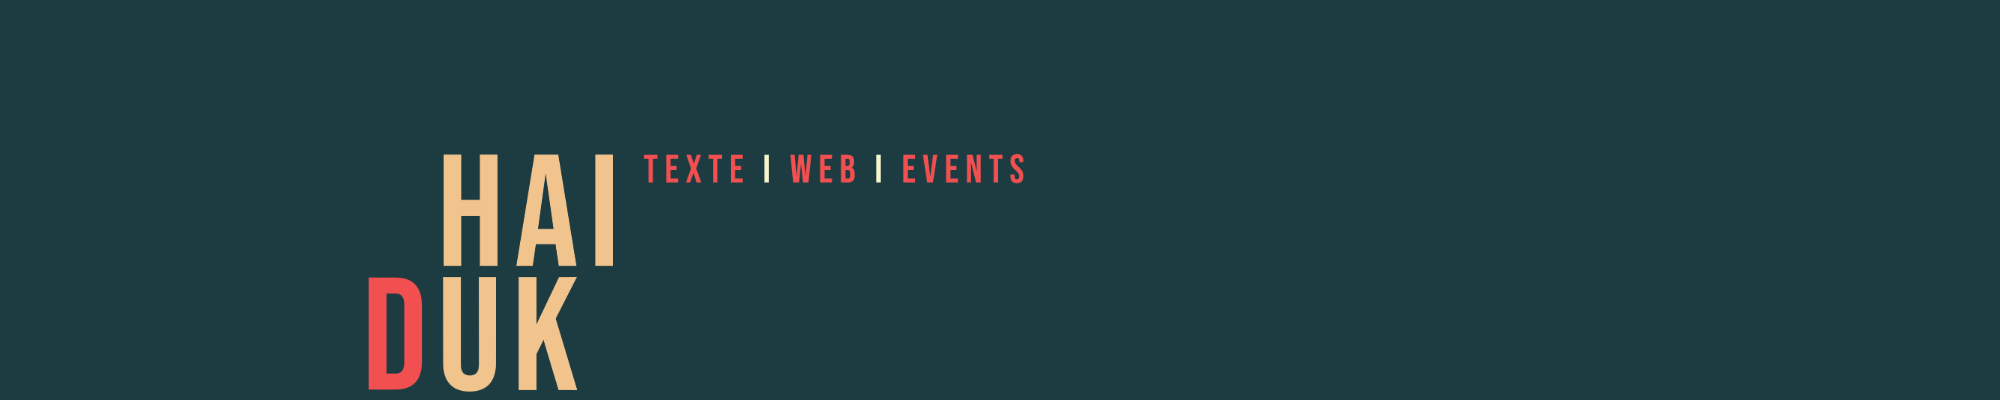 Texte I Web I Events